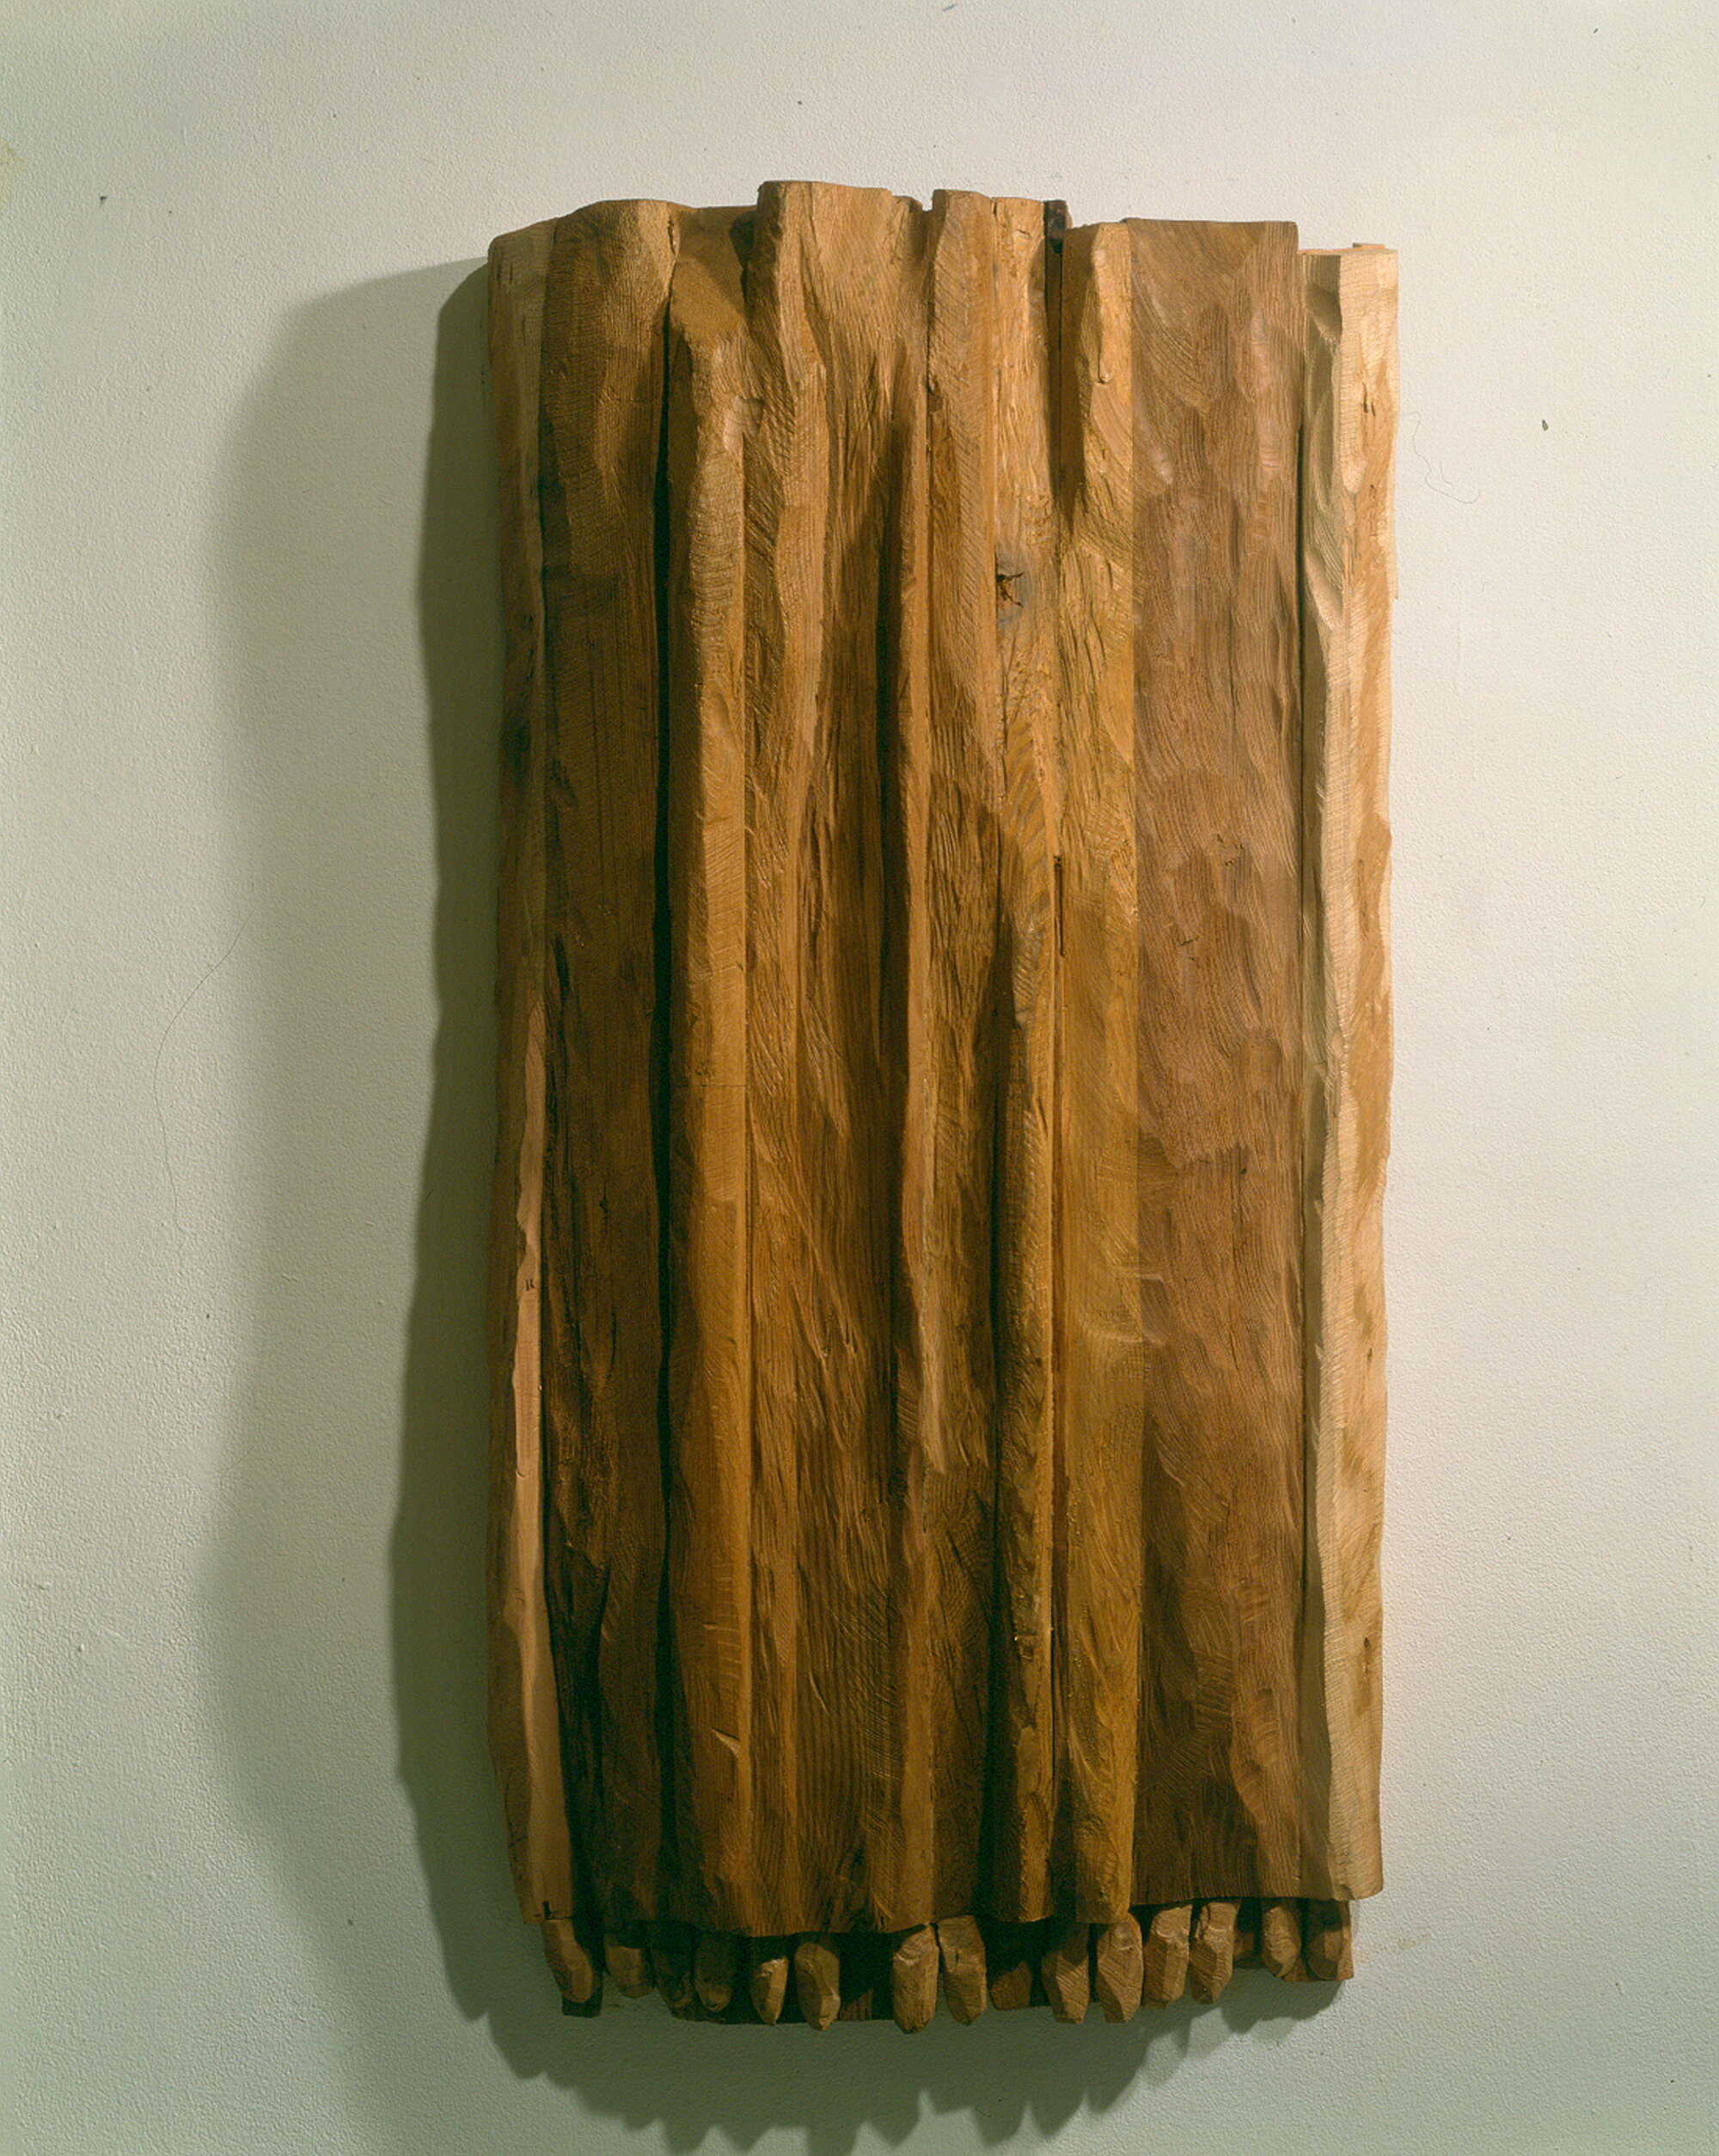       Lace Fingers , 1997 Cedar 38 x 19.75 x 5.5 in. 